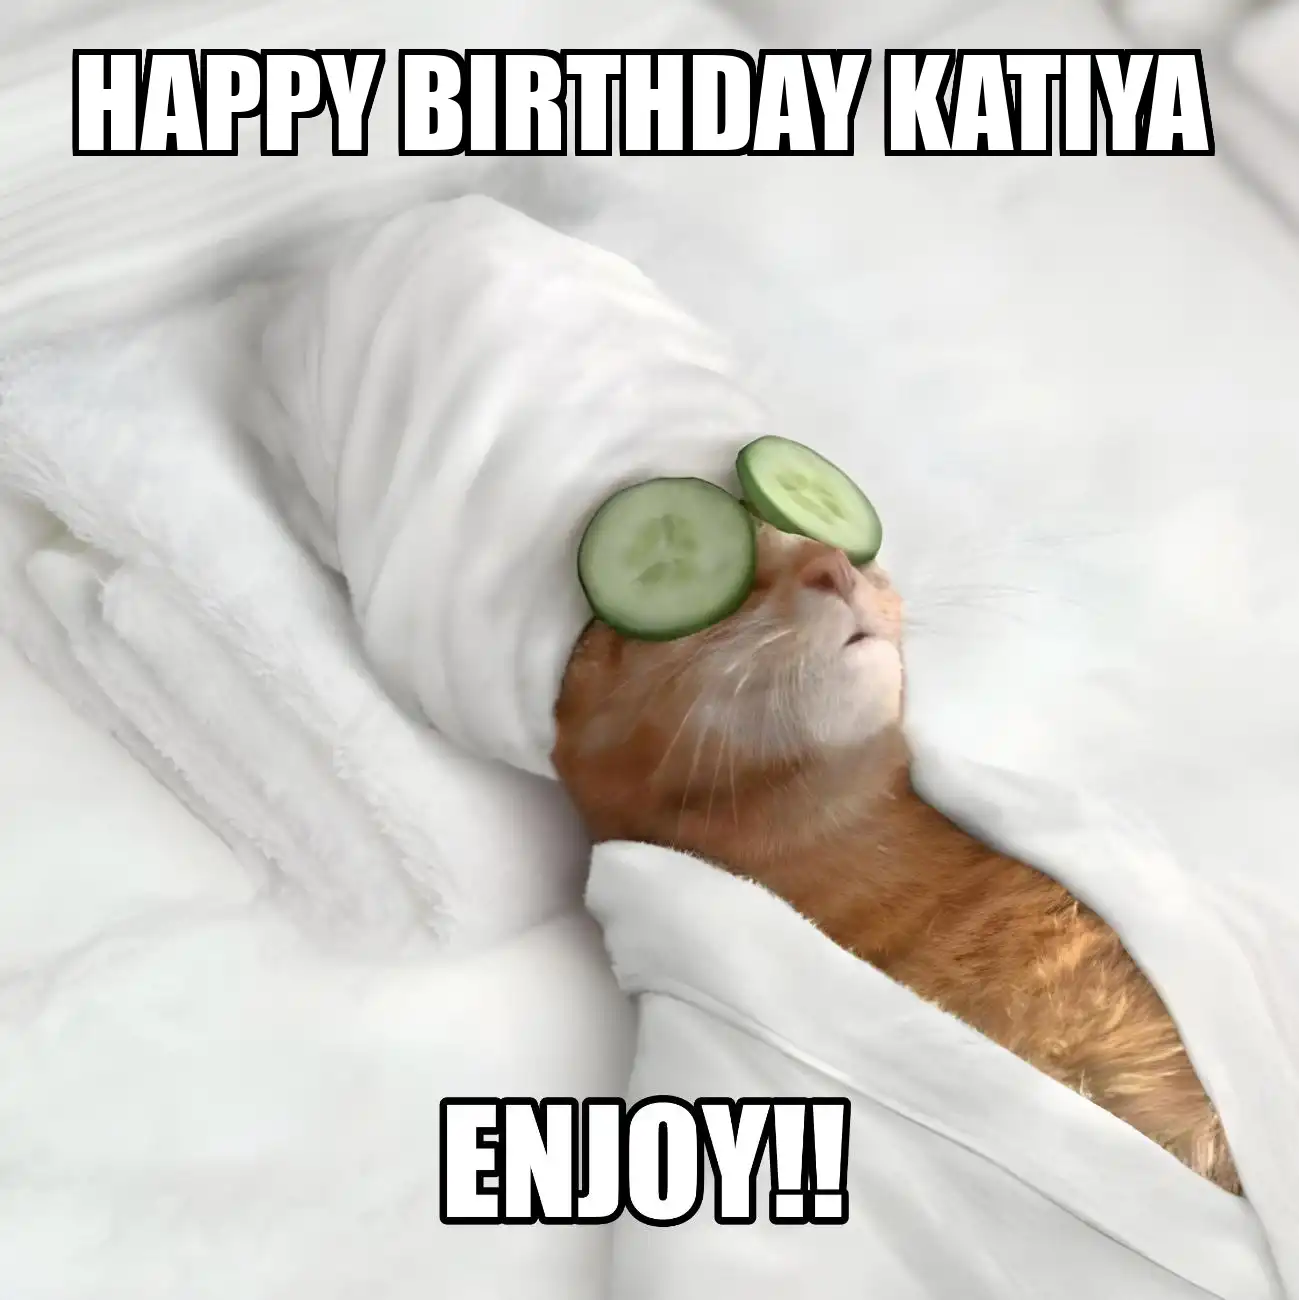 Happy Birthday Katiya Enjoy Cat Meme